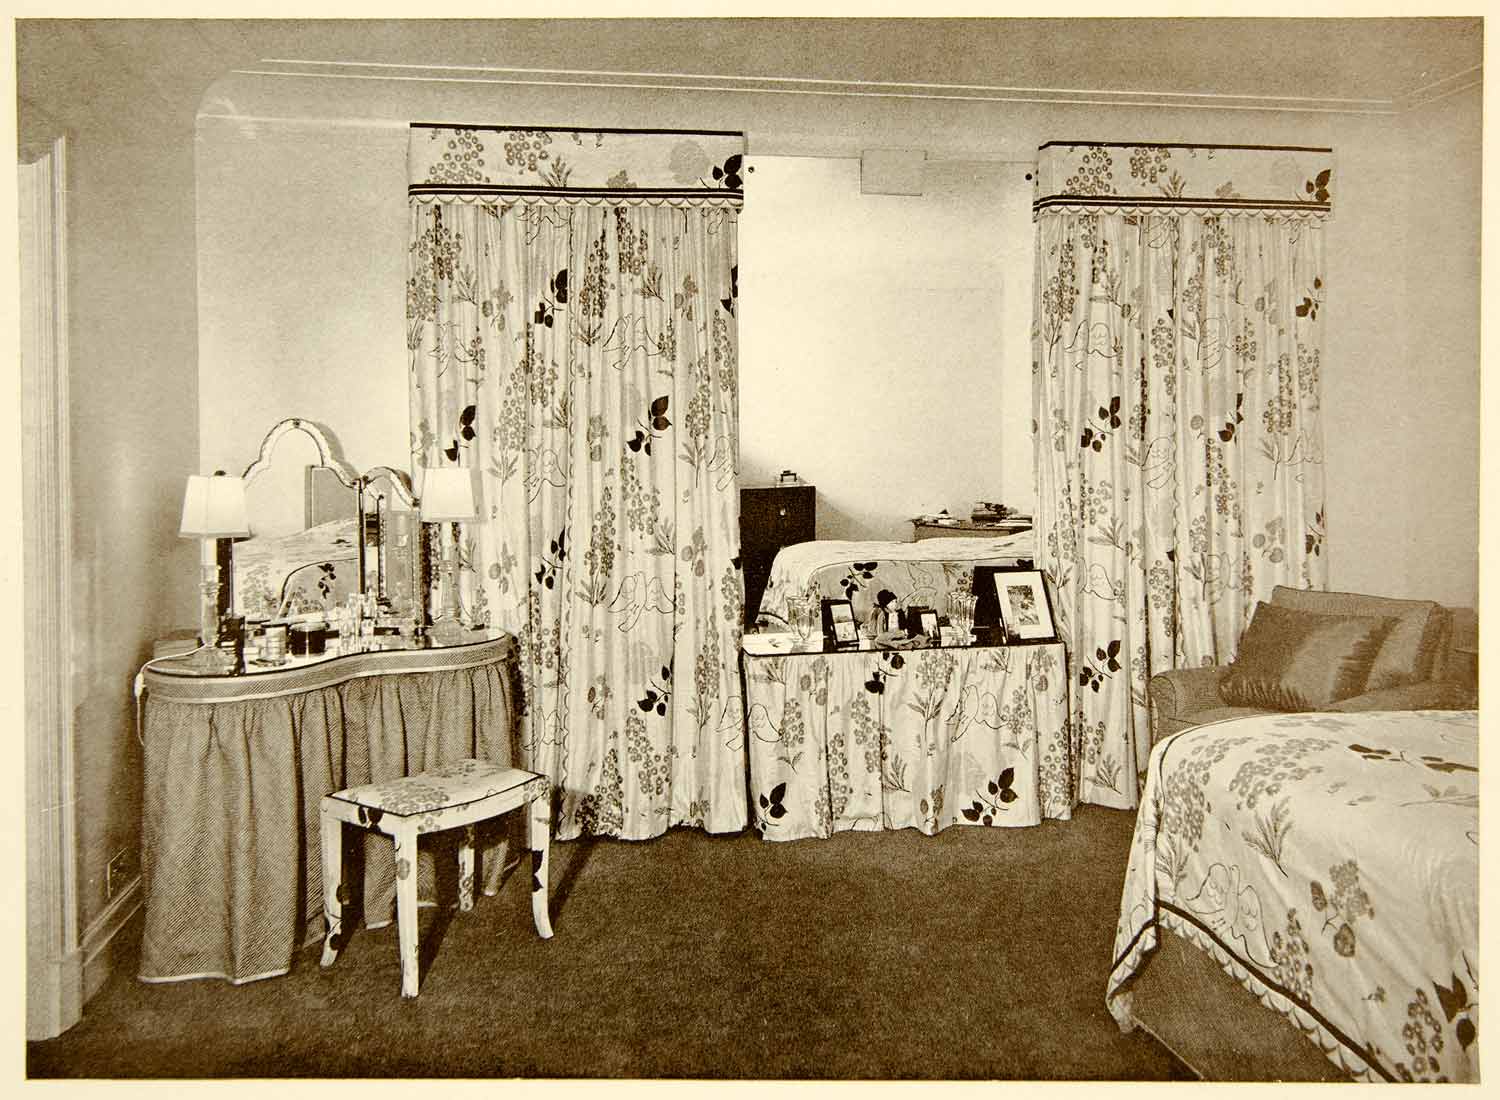 1938 Print Bedroom Derek Patmore Interior Decoration Herman Schryver Elden XDG8